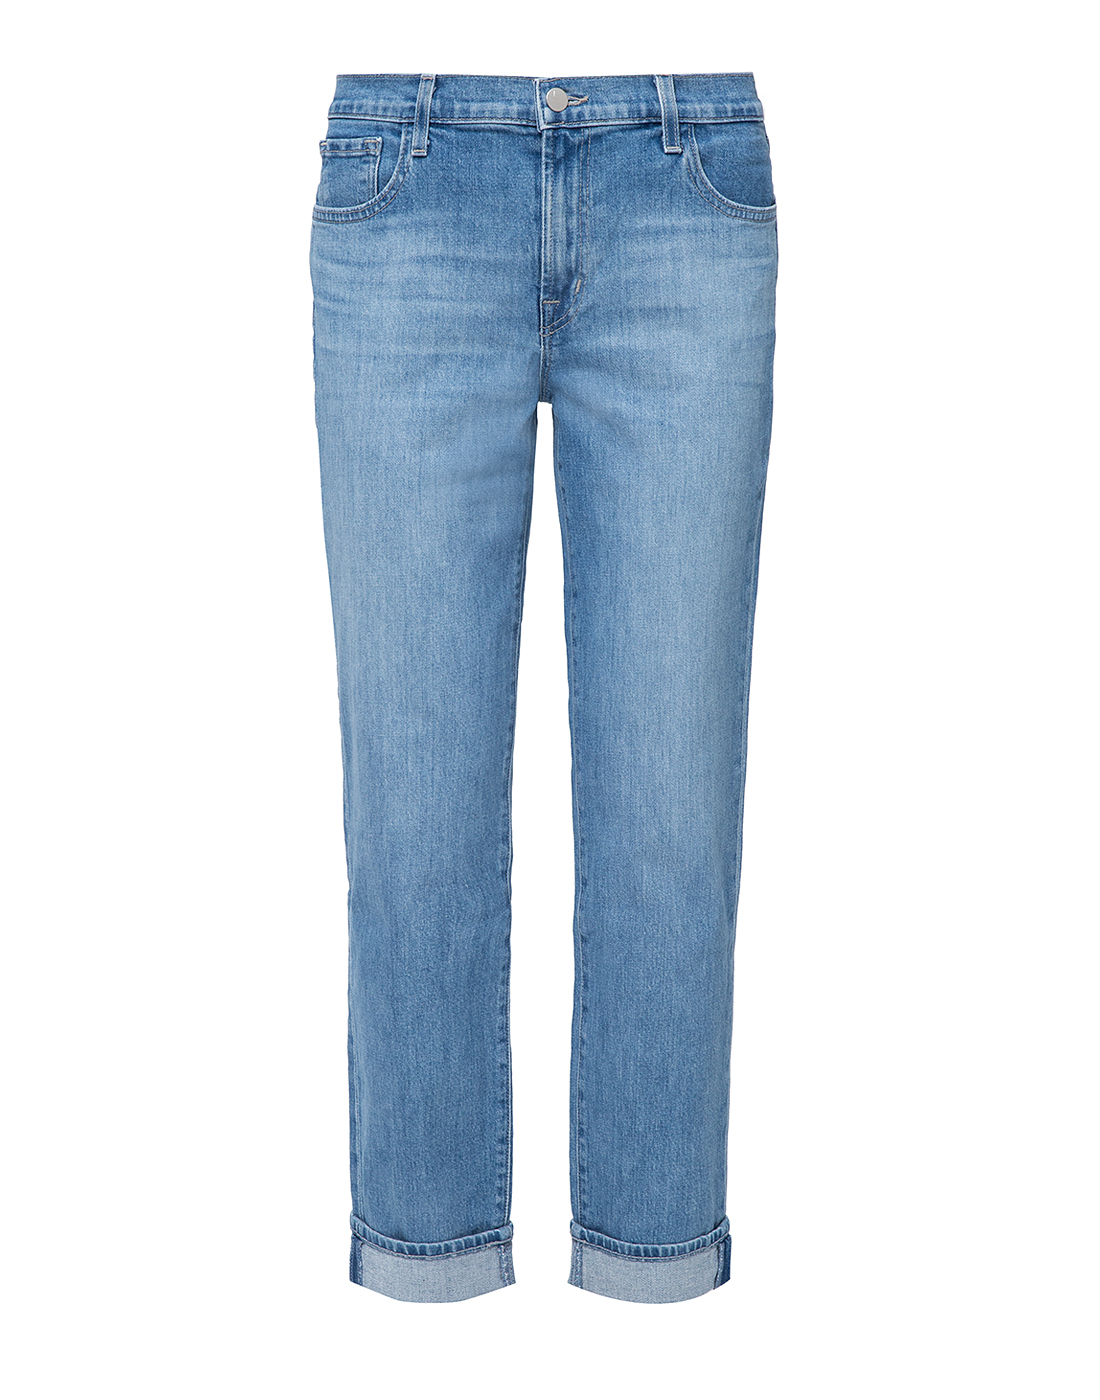 Женские голубые джинсы J BRAND SJB001729/C-1